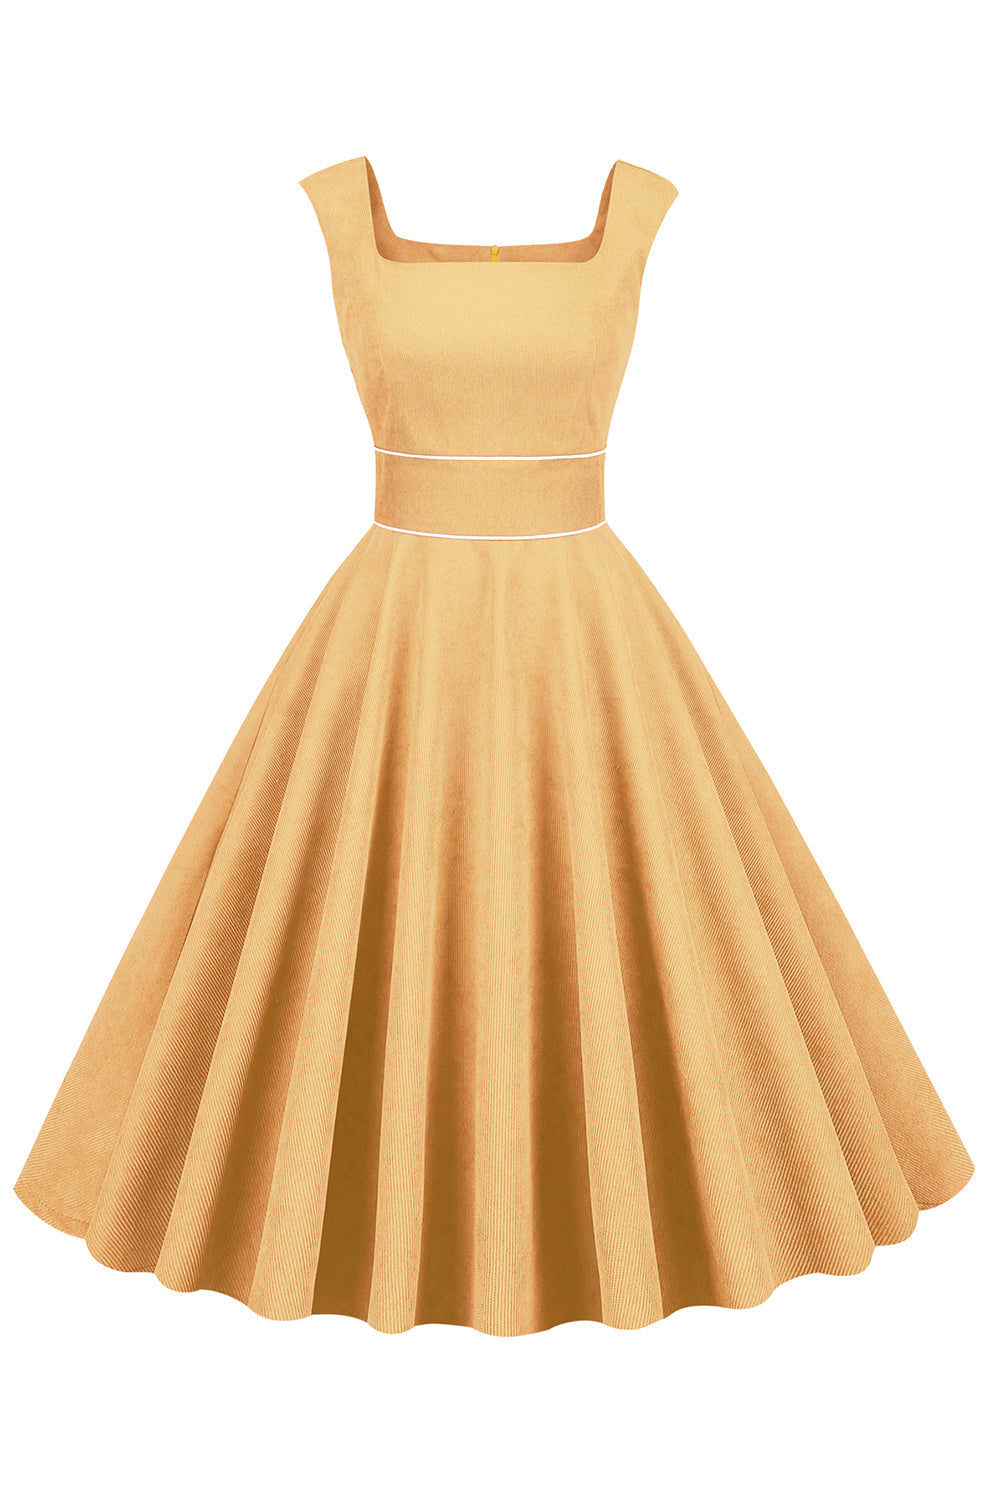 Vestido amarelo do pescoço quadrado de 1950